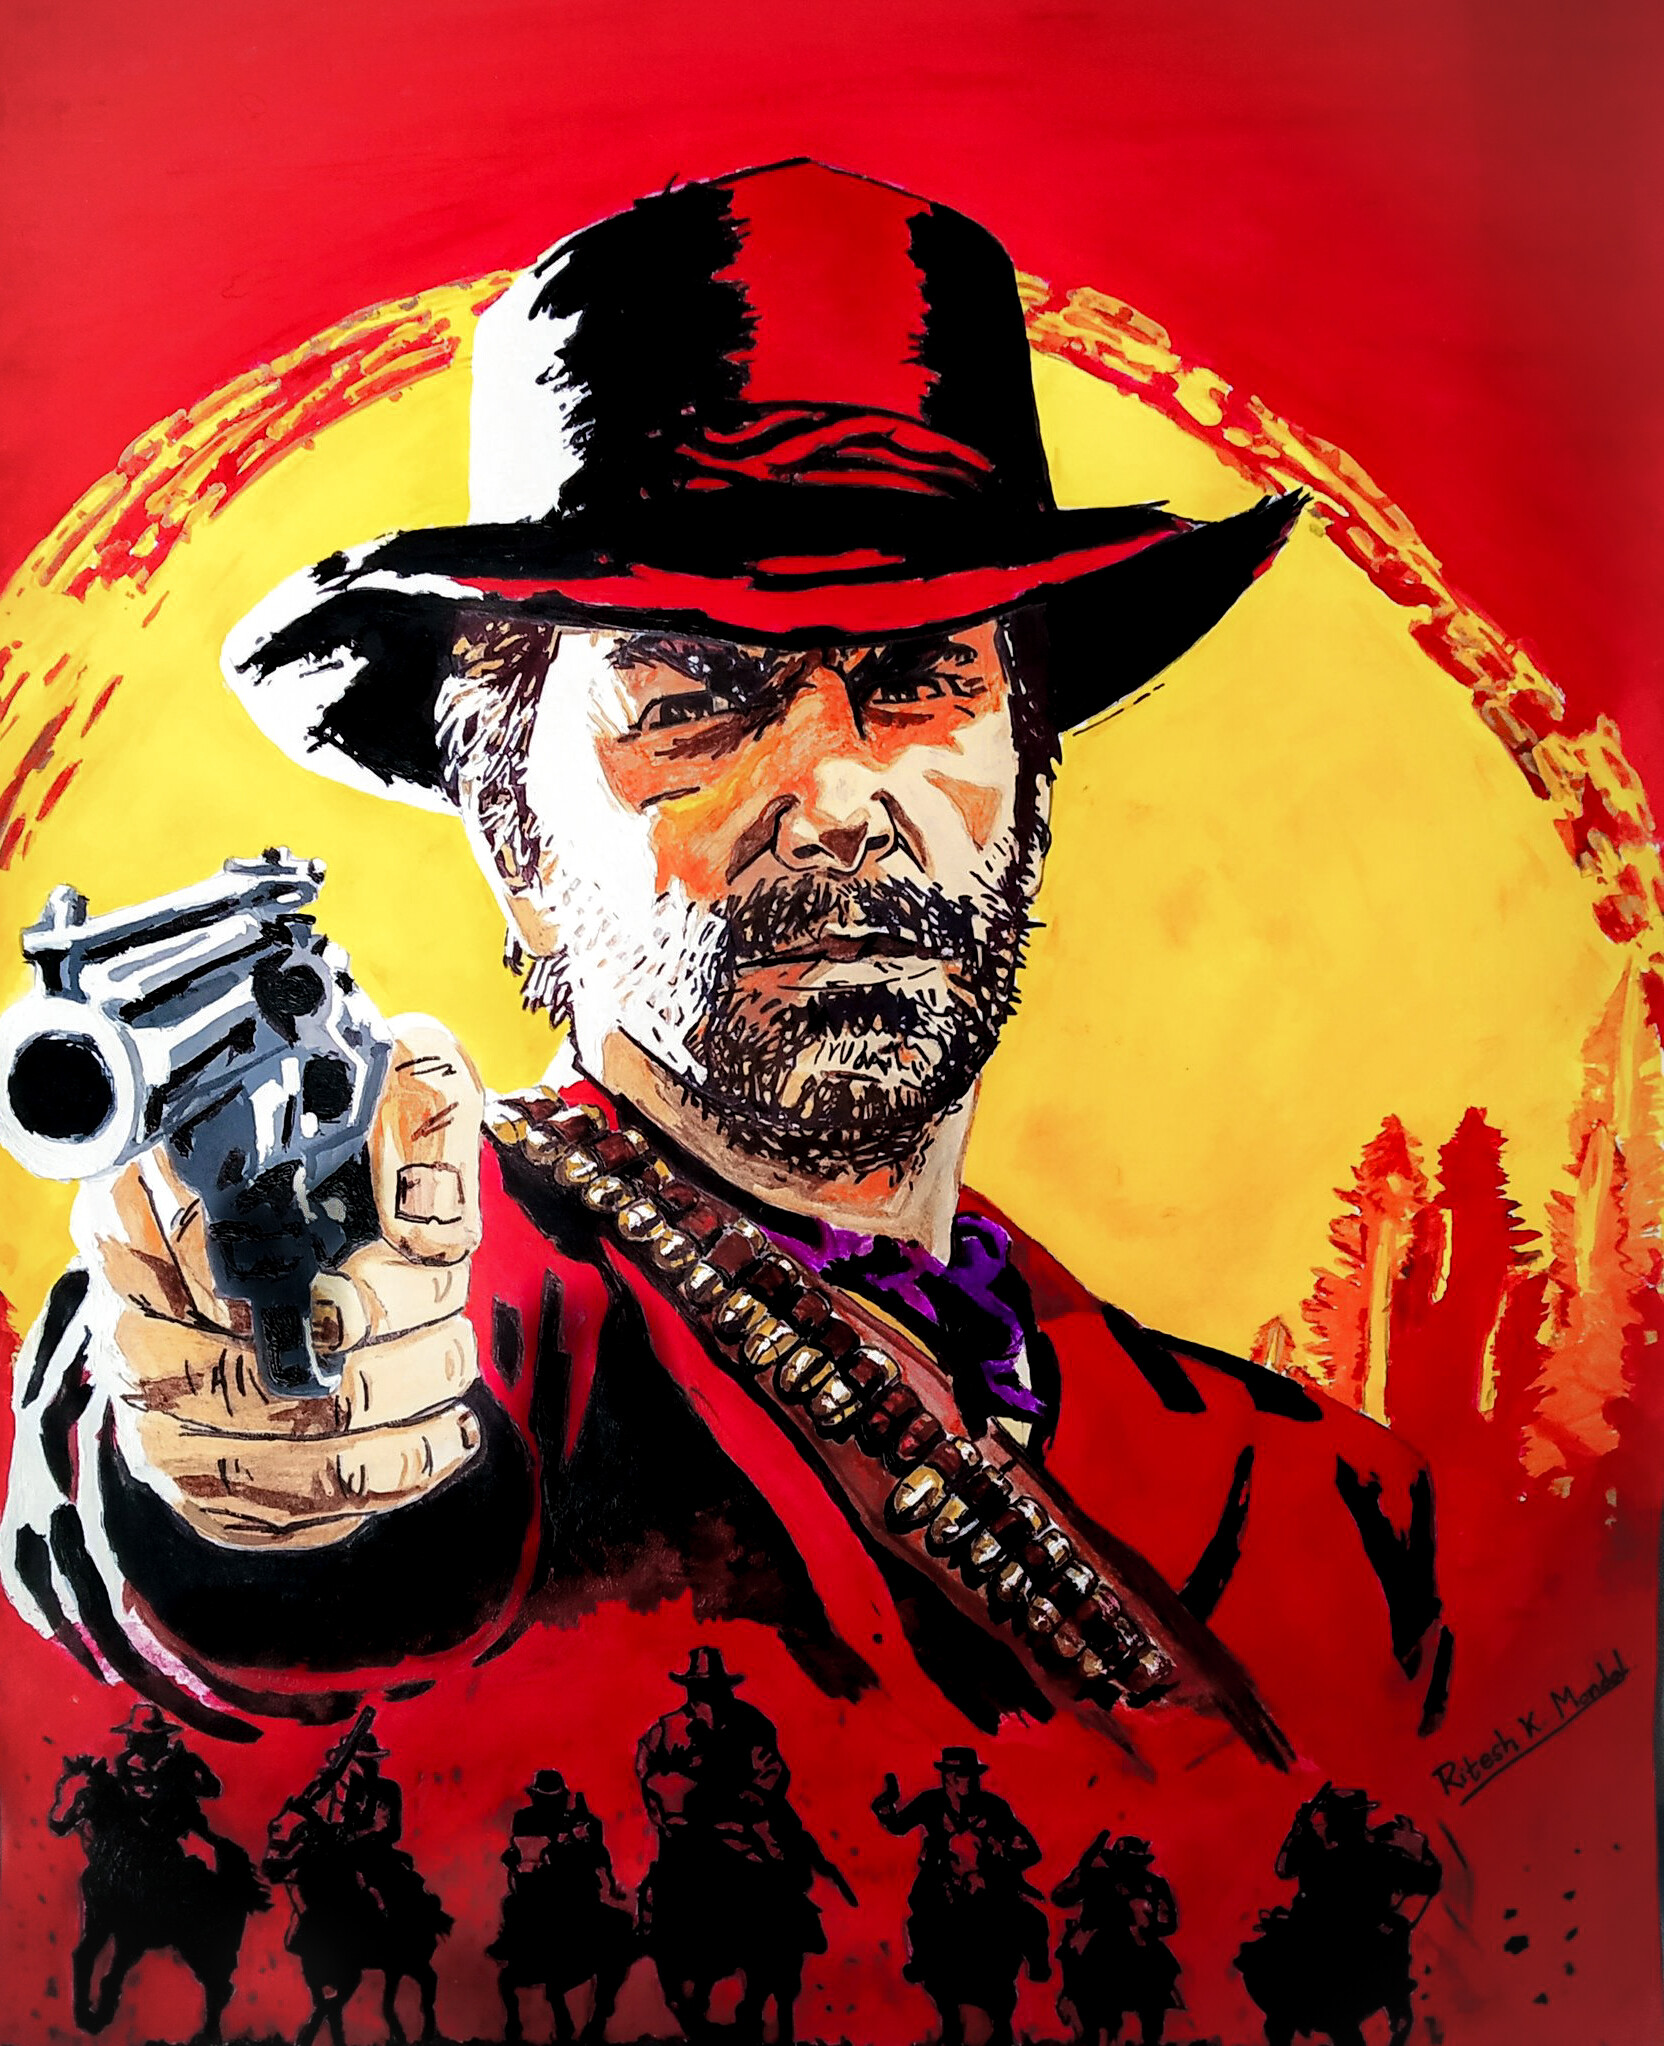 ArtStation - Red Dead Redemption 2 Poster | Artworks